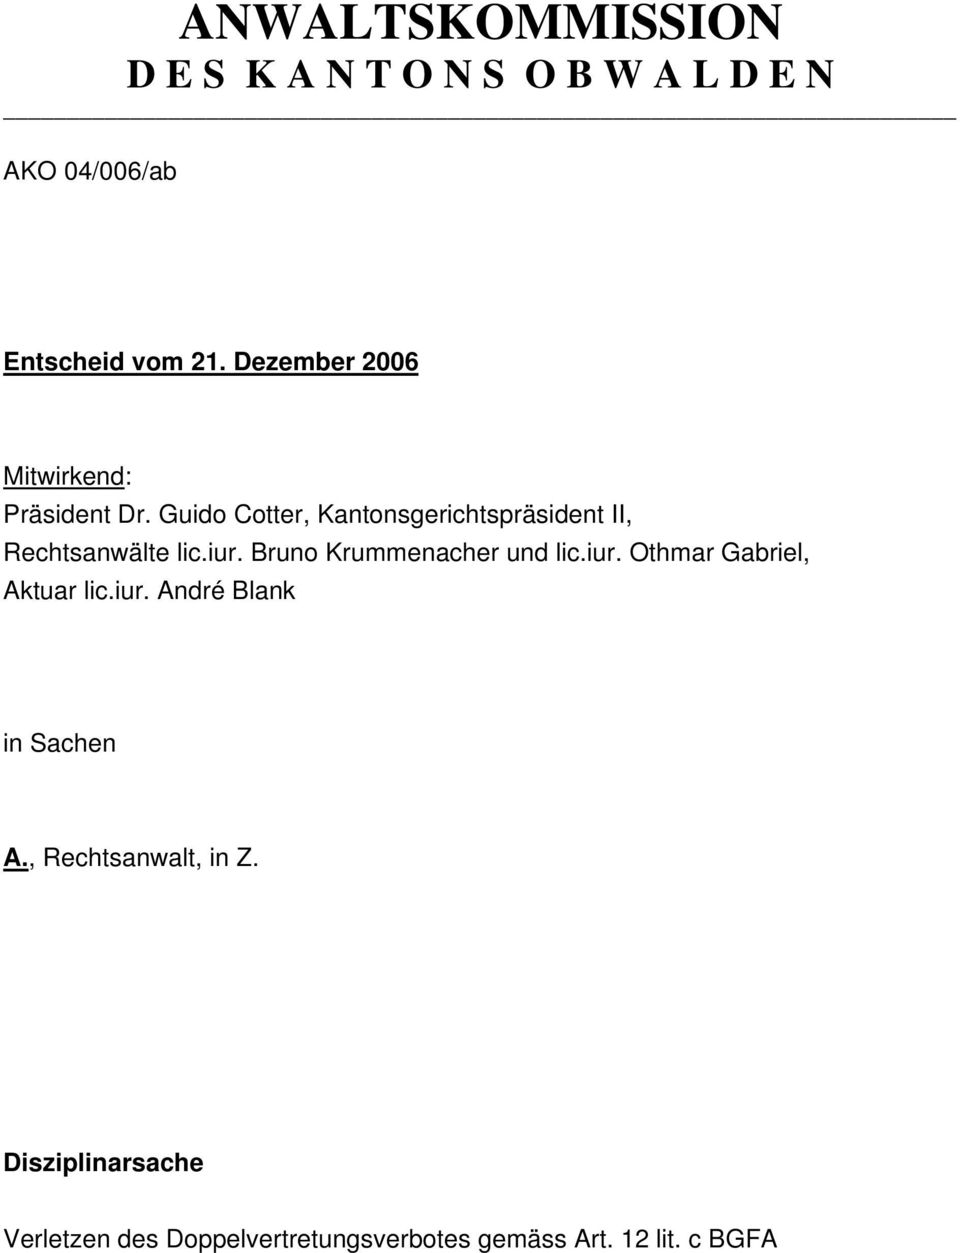 Guido Cotter, Kantonsgerichtspräsident II, Rechtsanwälte lic.iur. Bruno Krummenacher und lic.iur. Othmar Gabriel, Aktuar lic.